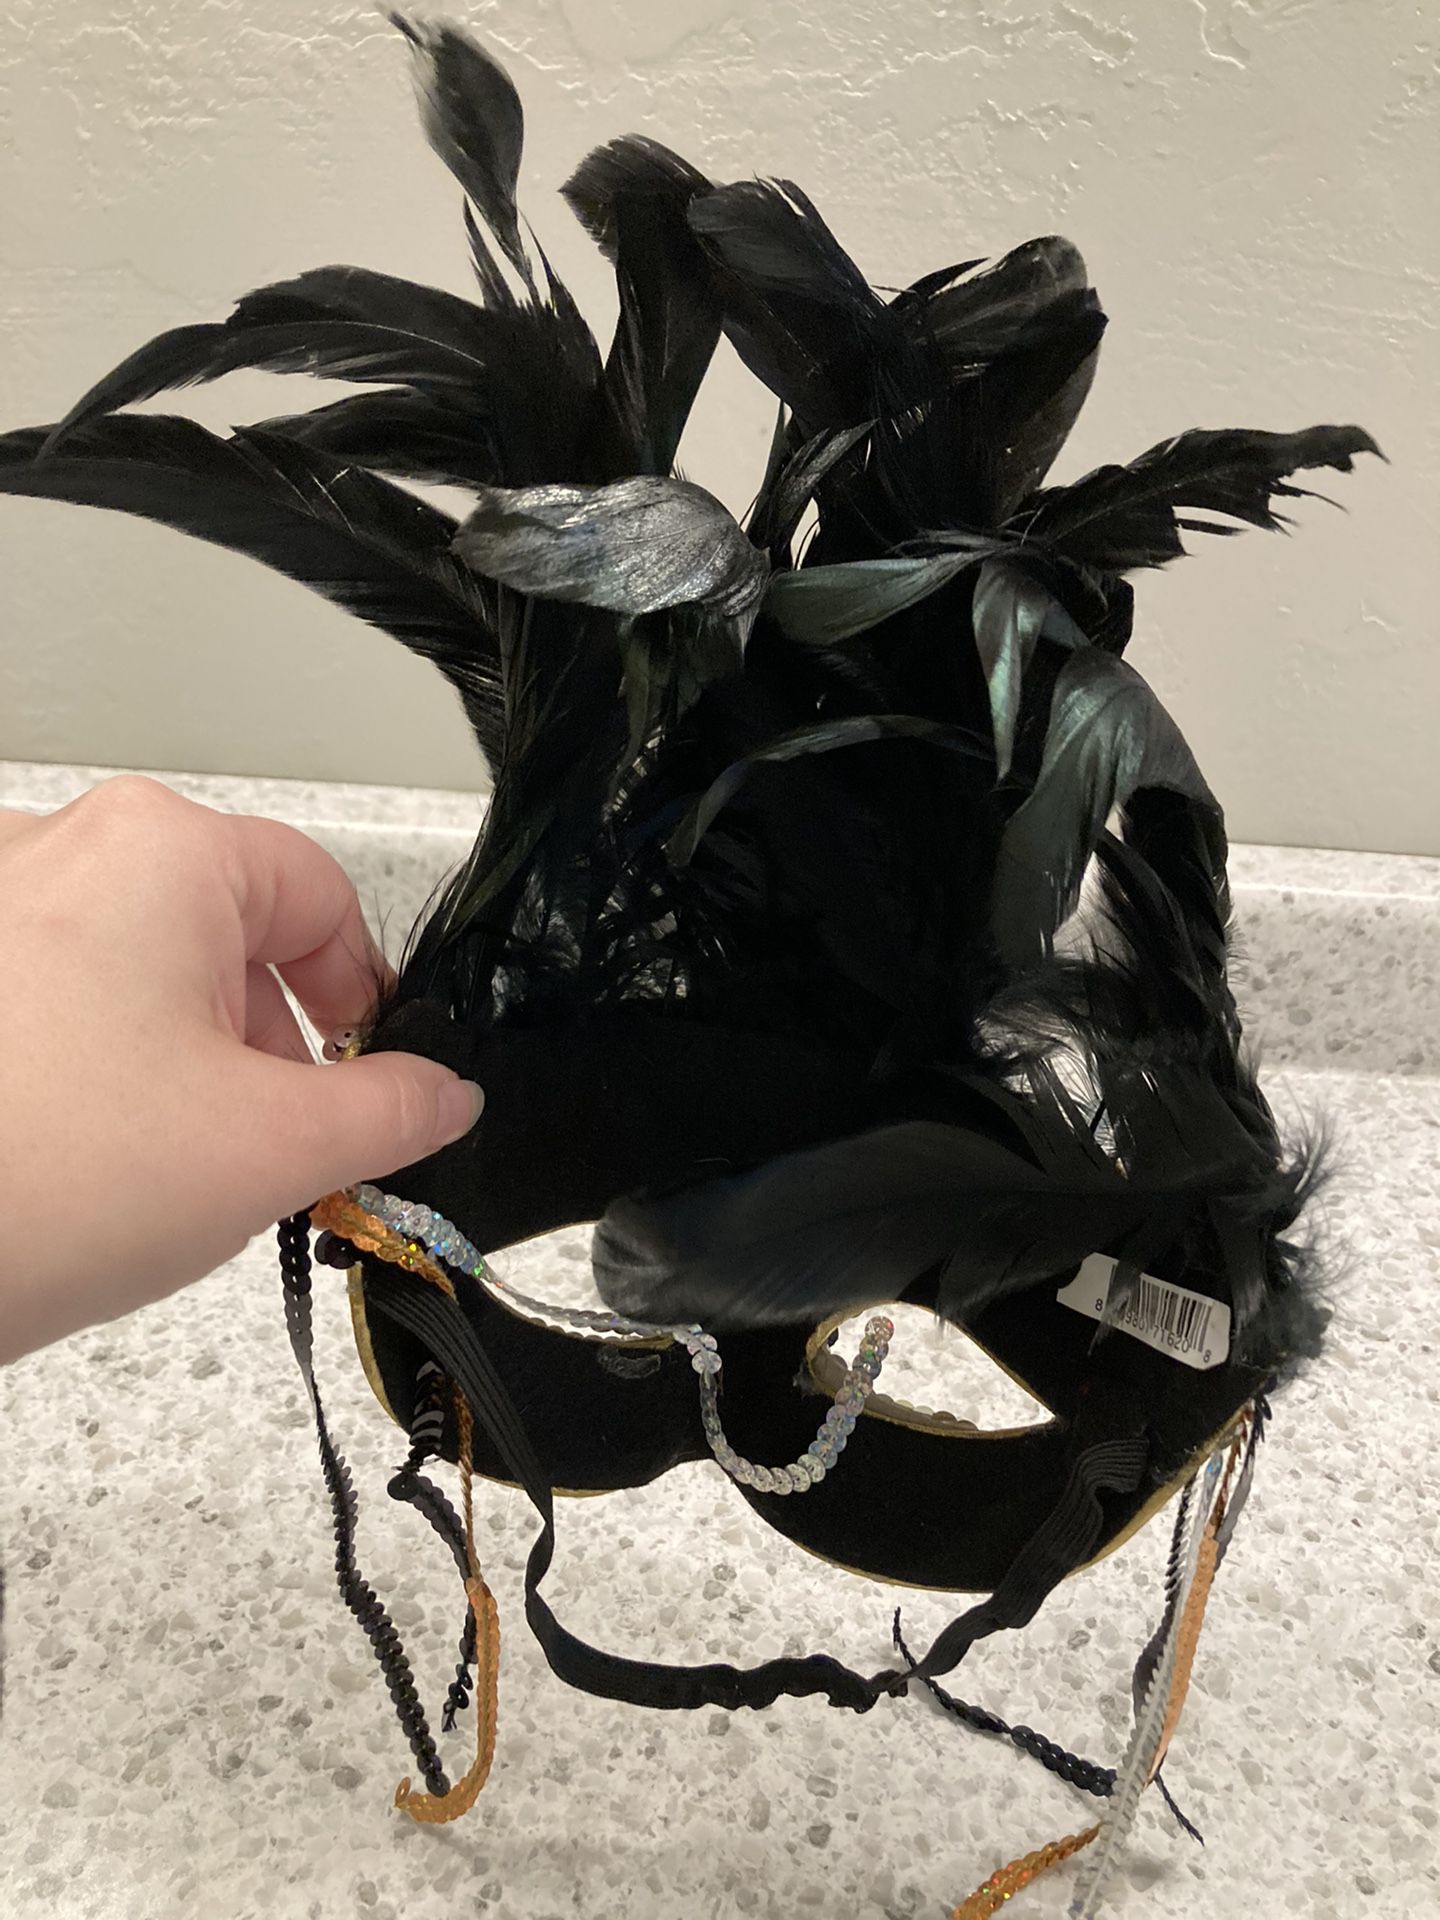 Halloween Mask 